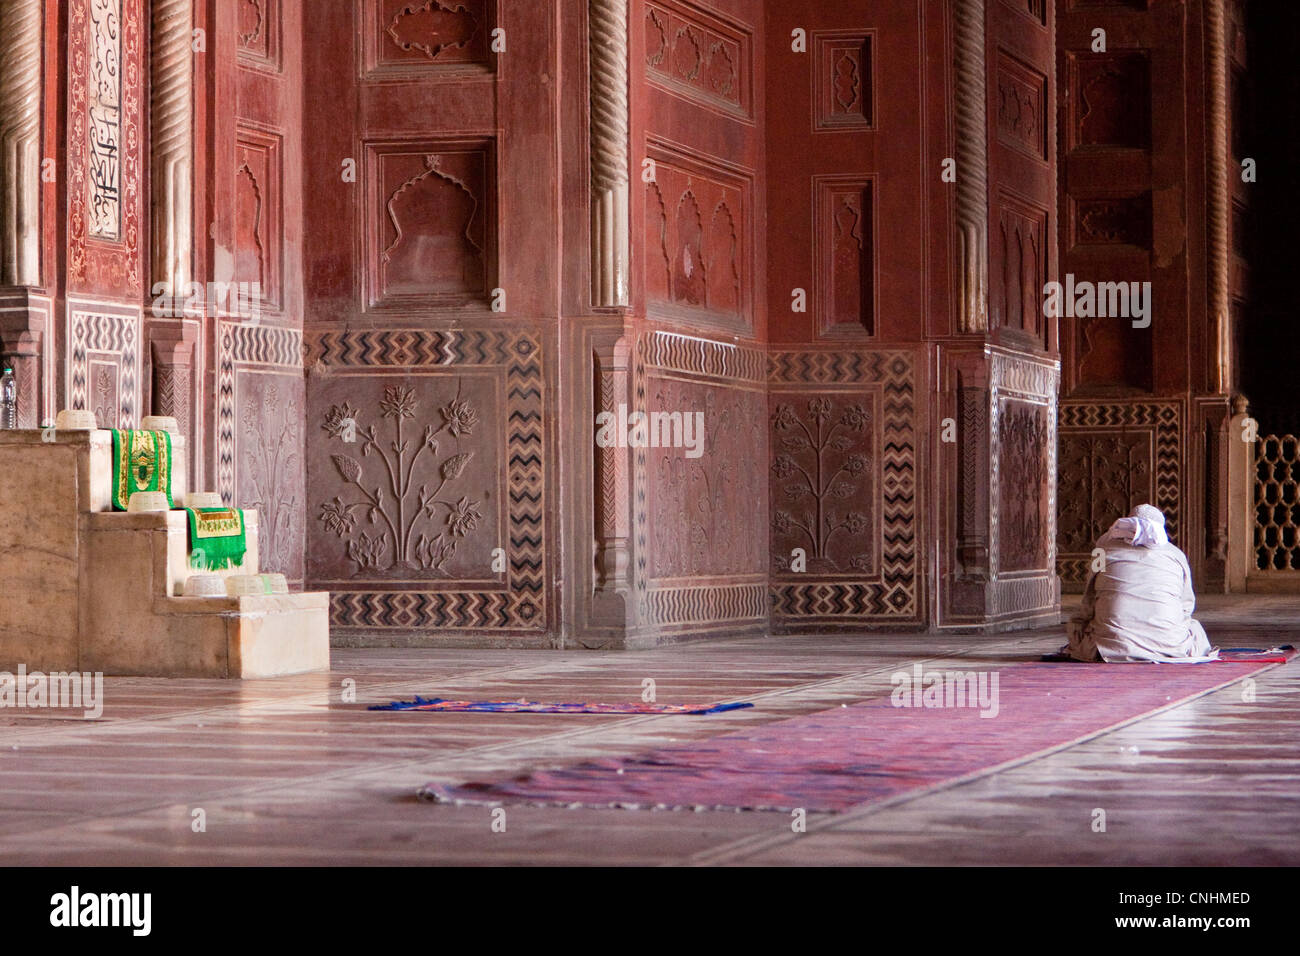 Agra, Indien. Taj Mahal Moschee Innenraum. Imam lesen den Koran in Erwartung der Gebetszeit. Minibar auf der linken Seite, von der aus der Imam gibt seine Predigt. Stockfoto